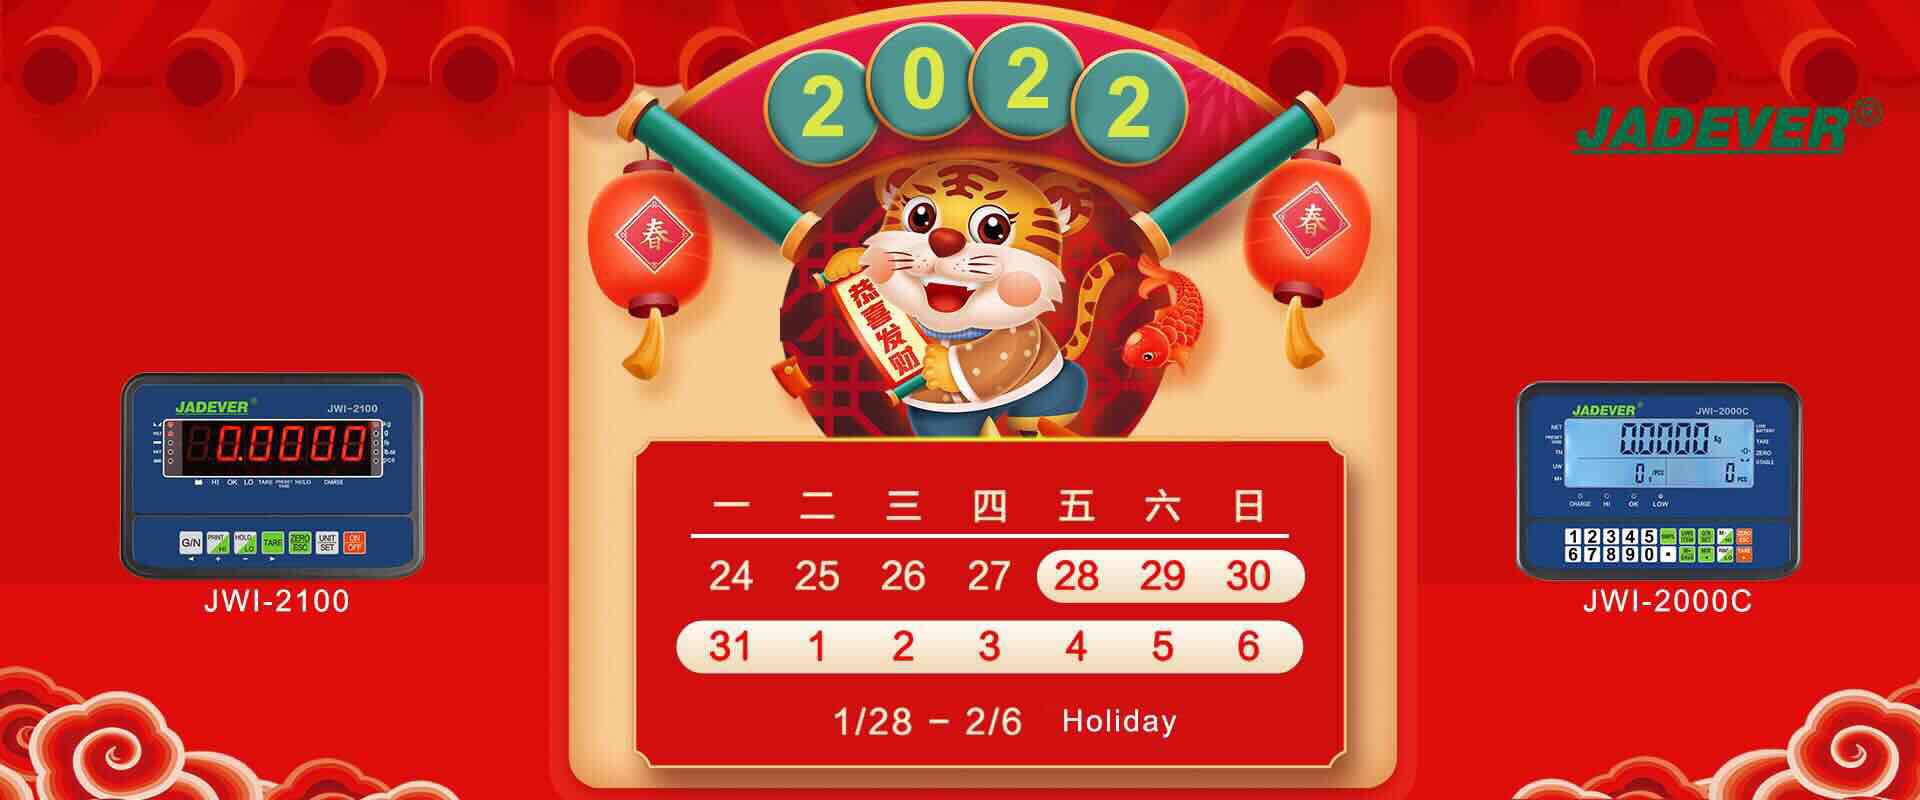 aviso de feriado - ano novo lunar chinês 2022